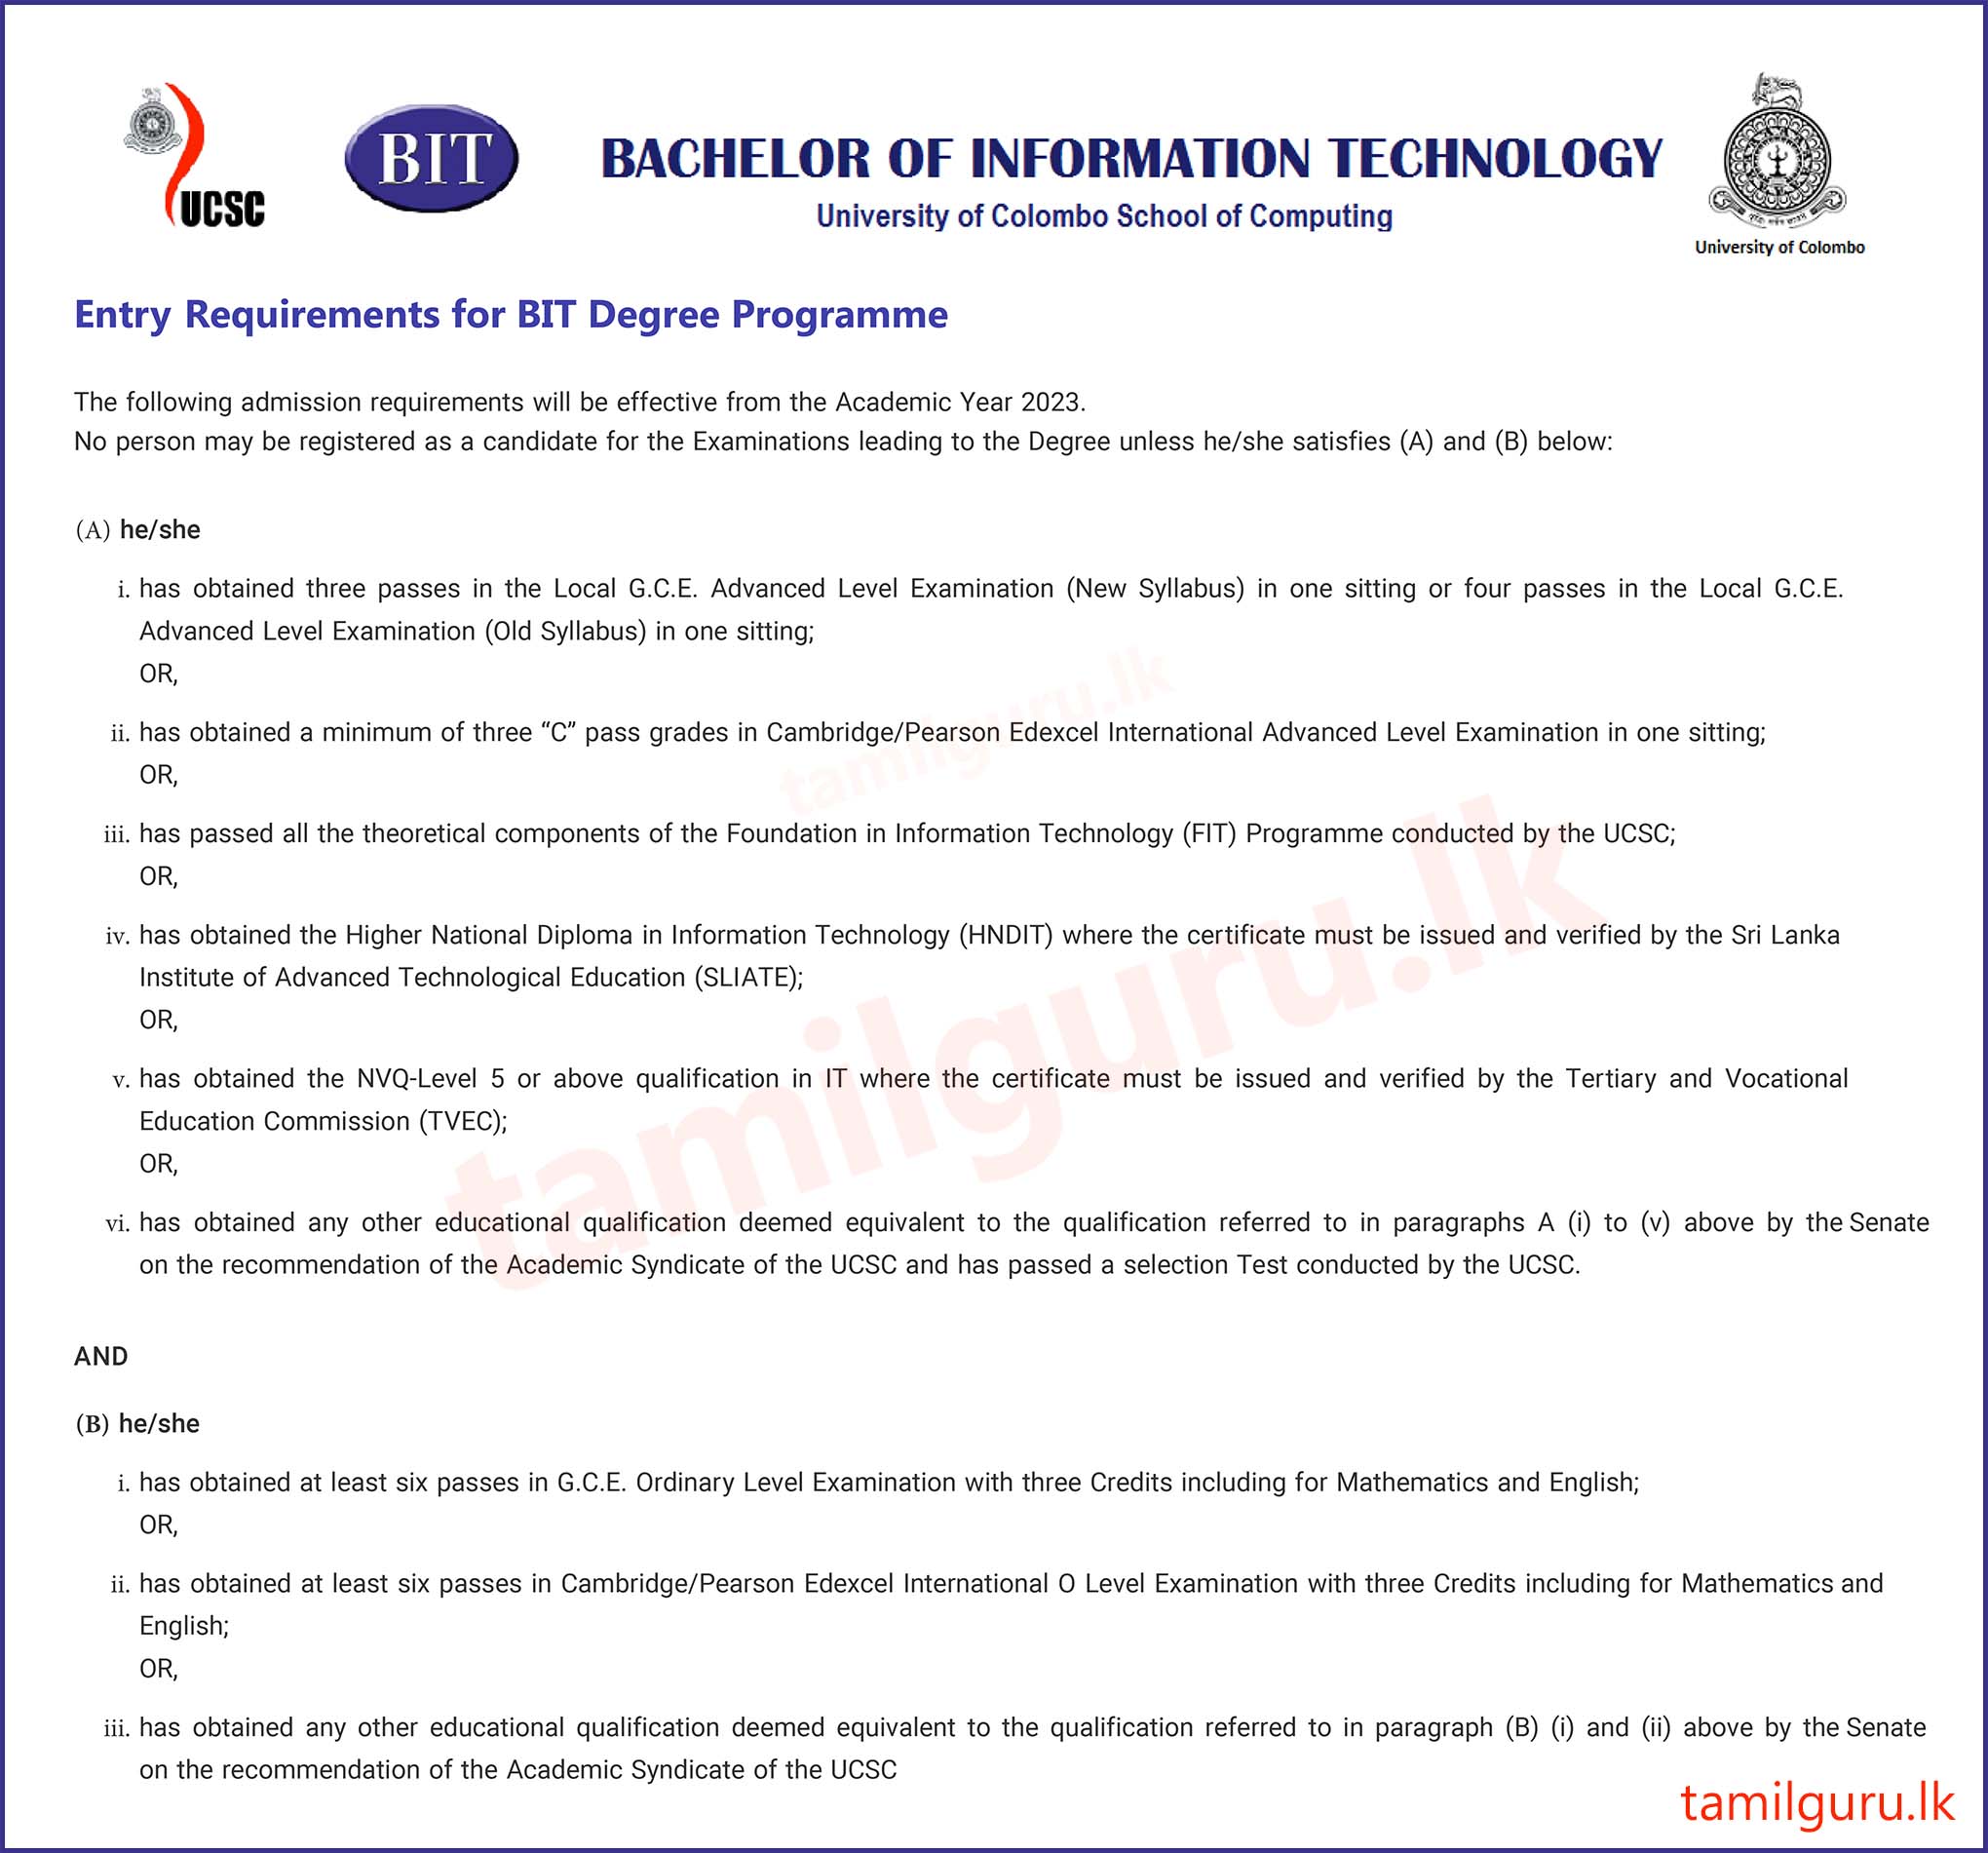 Bachelor of Information Technology (BIT) (External) Degree Programme 2023 - University of Colombo (UCSC)